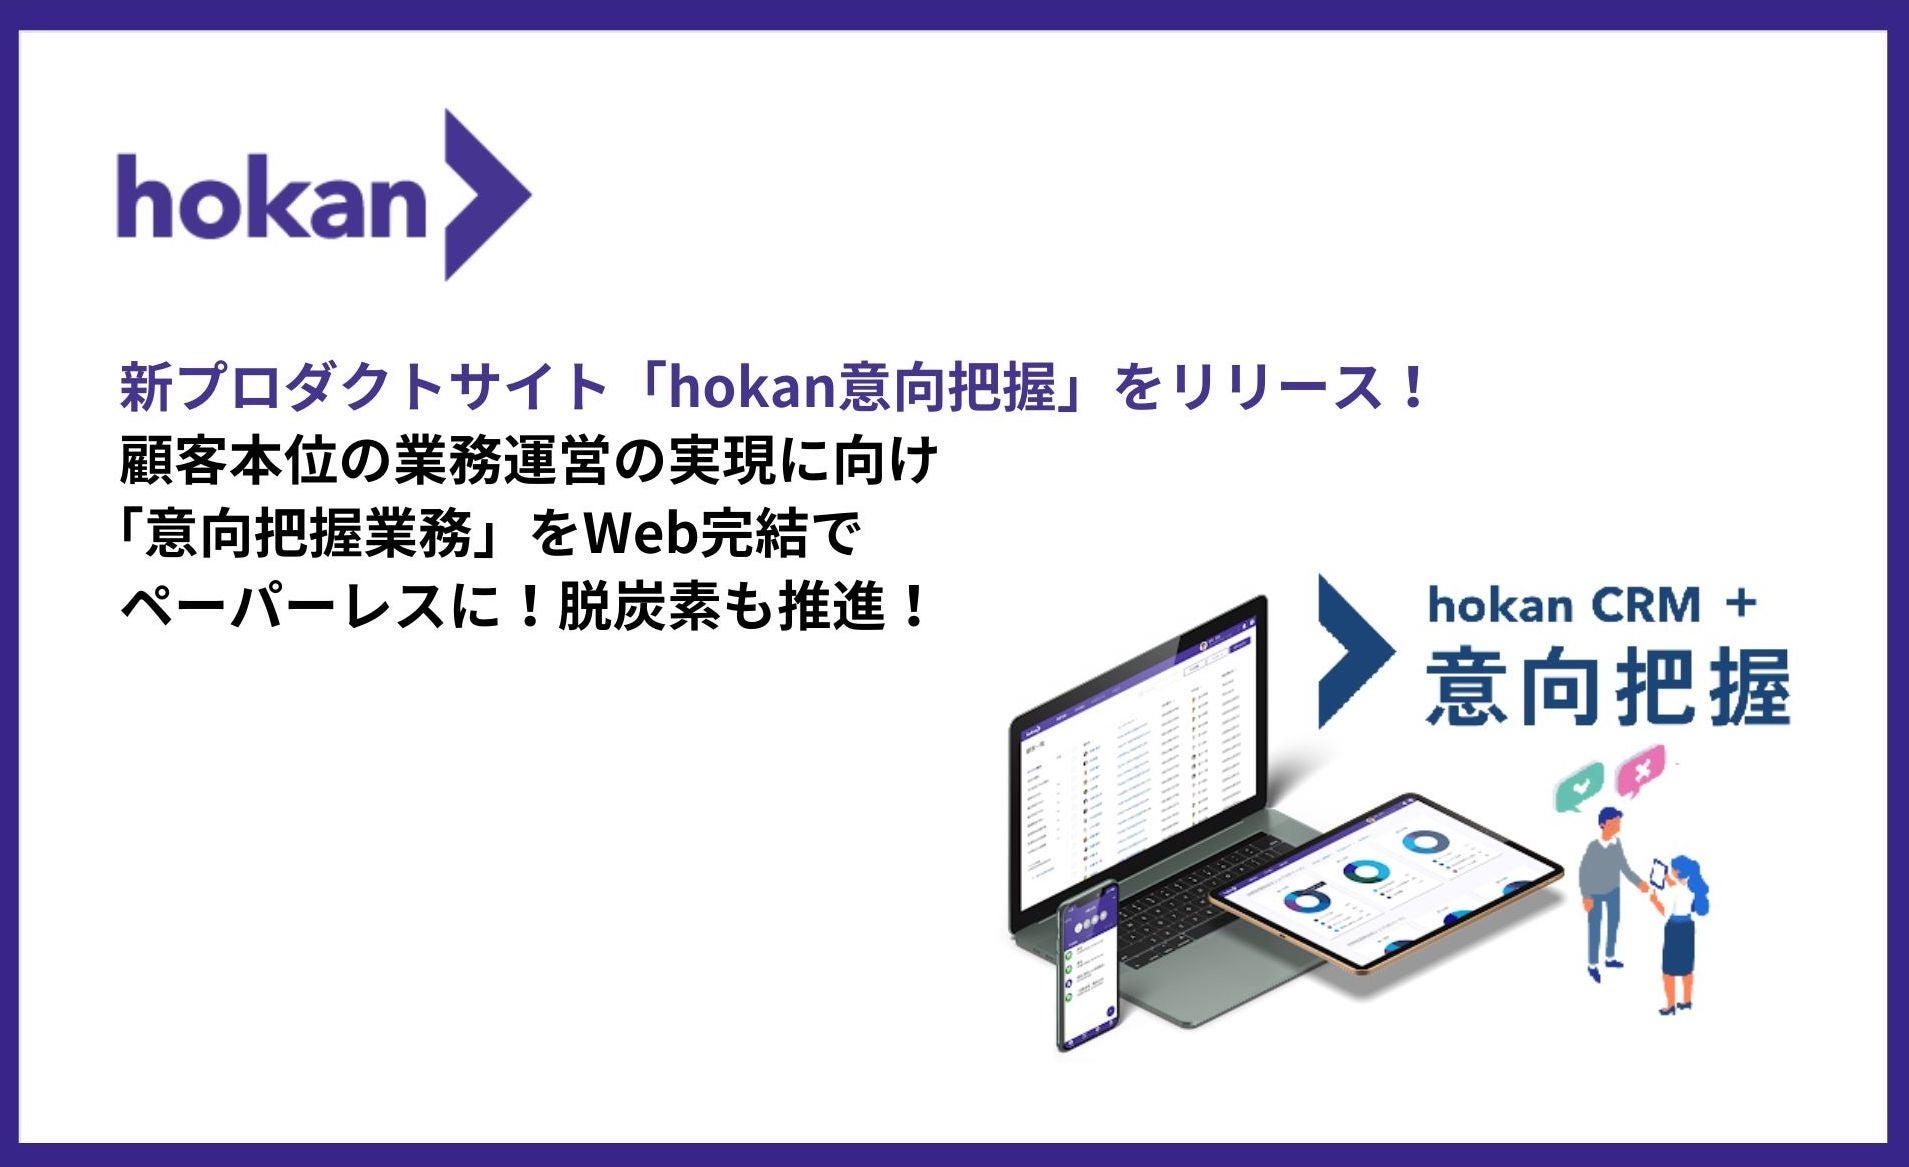 新プロダクトサイト「hokan意向把握」をリリース！ 顧客本位の業務運営の実現に向け、「意向把握業務」をWeb完結でペーパーレスに！脱炭素も推進！